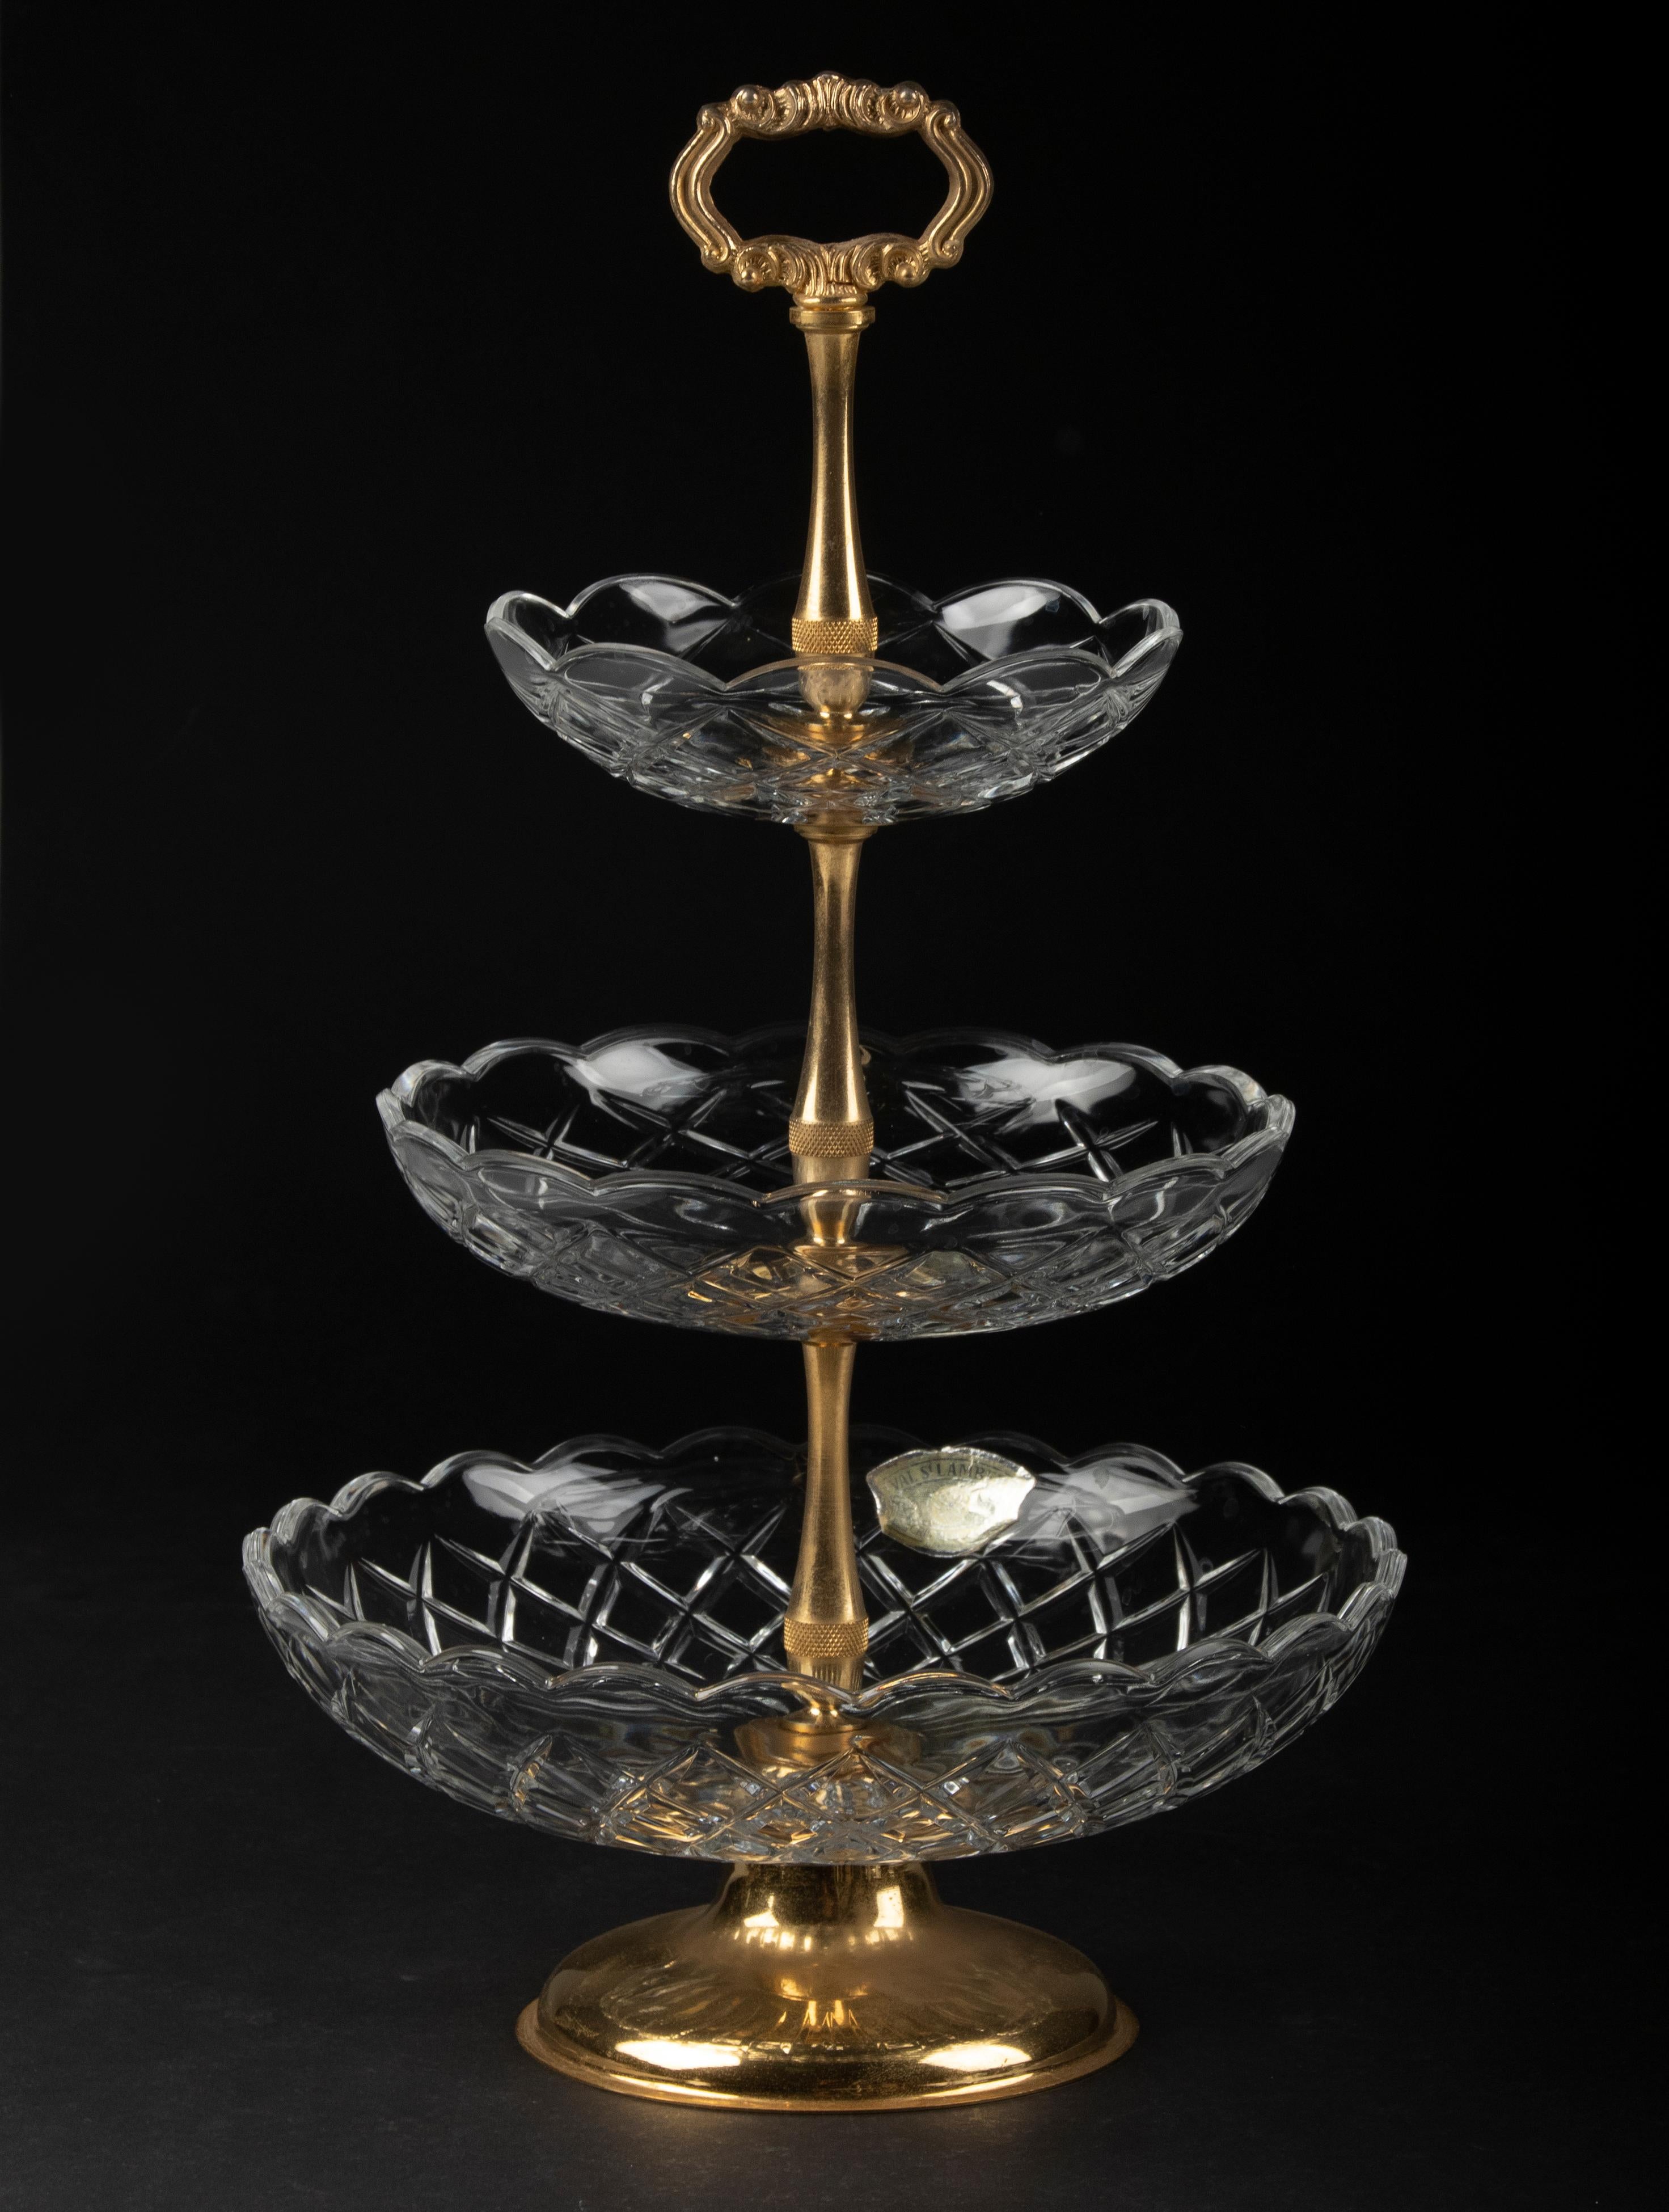 Schöner 3-Schicht-Kristallständer von dem belgischen Designer Val Saint Lambert. Der Rahmen ist aus vergoldetem Metall gefertigt. Die Kristallschalen haben einen schönen Schliff mit Bögen und gewellten Rändern. Der Stand stammt aus der Zeit um 1960.